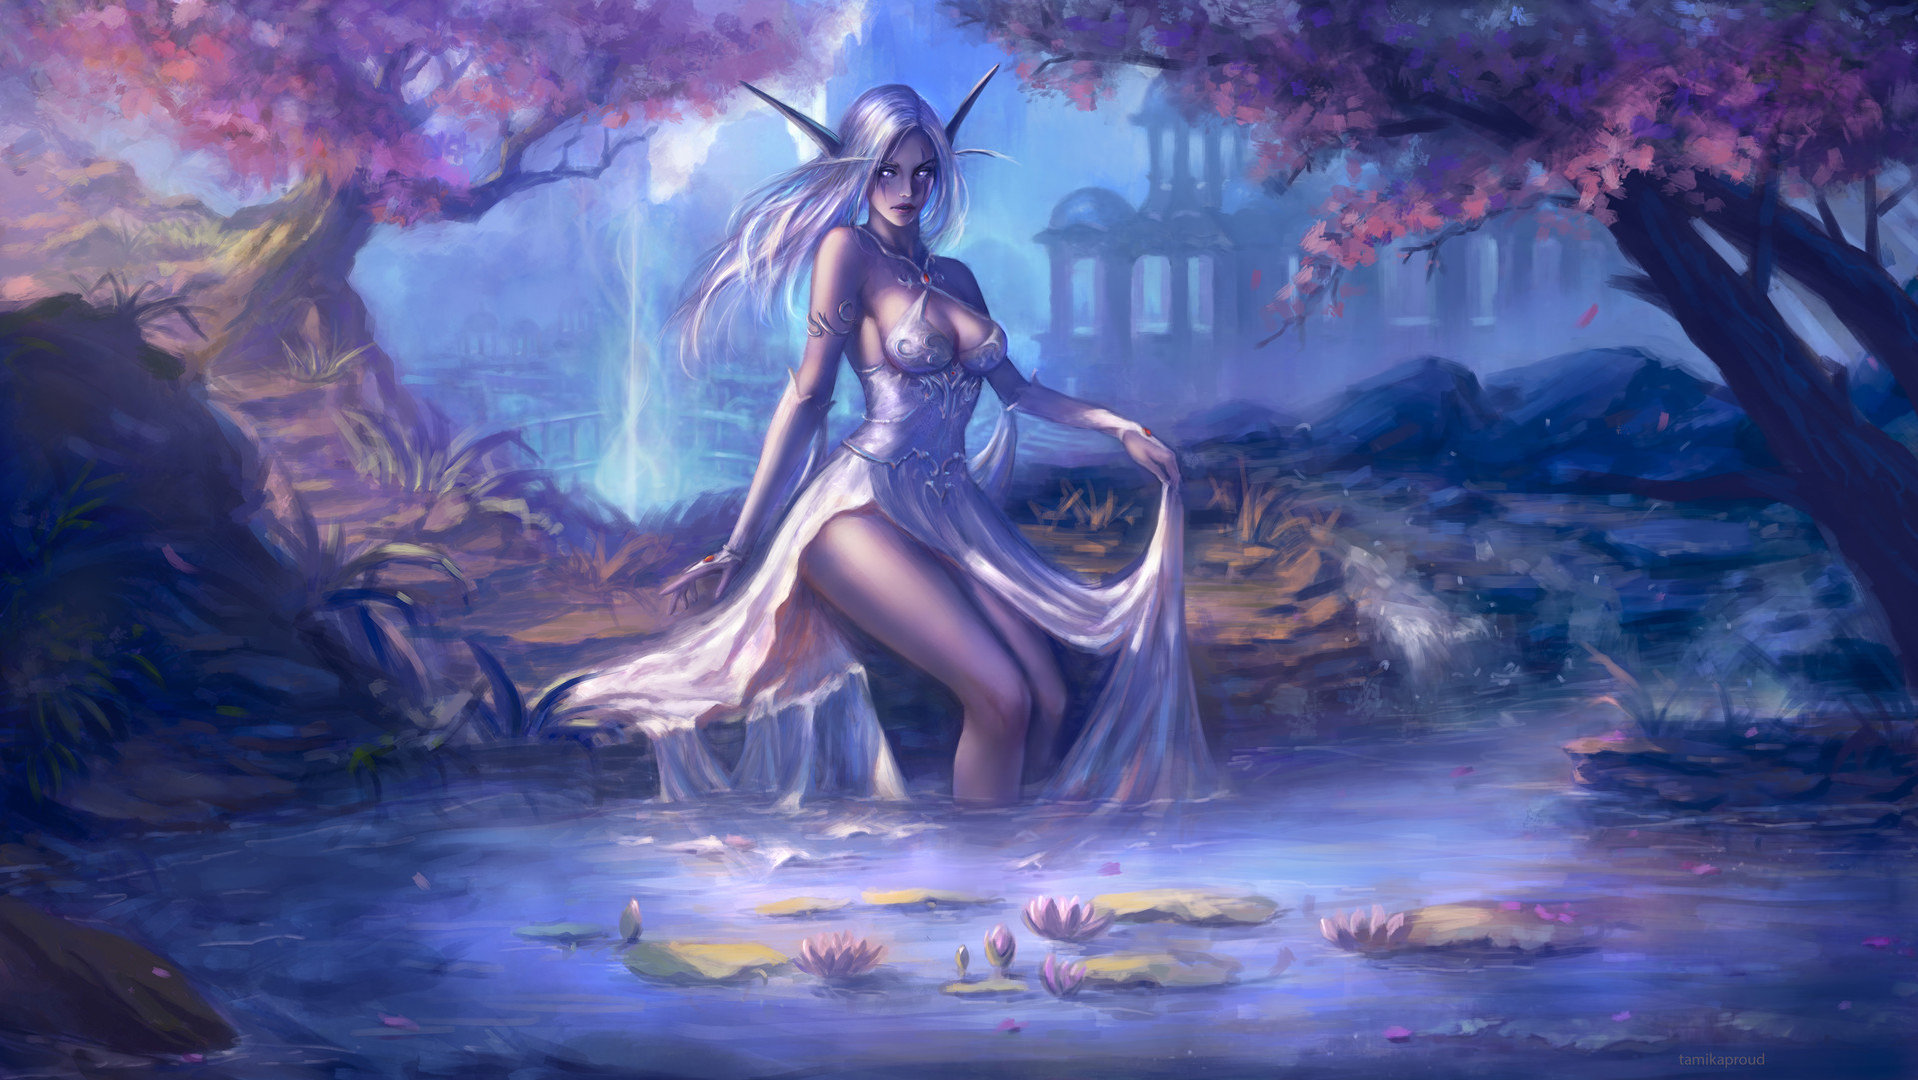 魔兽同人：戏水溪边 卡多雷帝国时期的暗夜美女